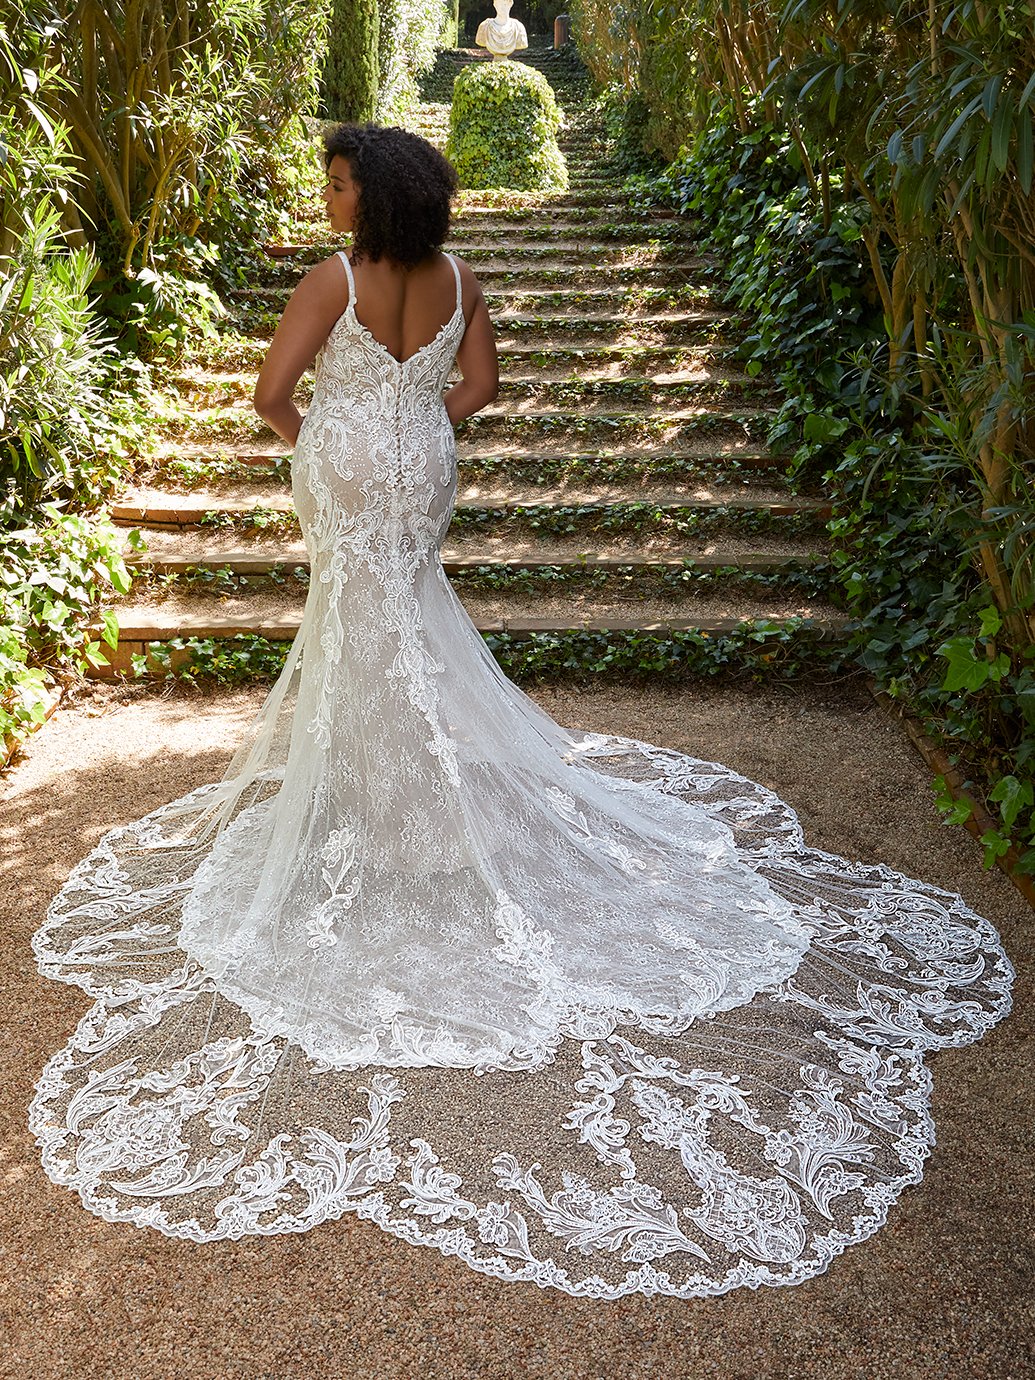 blanc-de-blanc-bridal-boutique-cleveland-dress-wedding-gown-elysee-edition-alessia.jpg